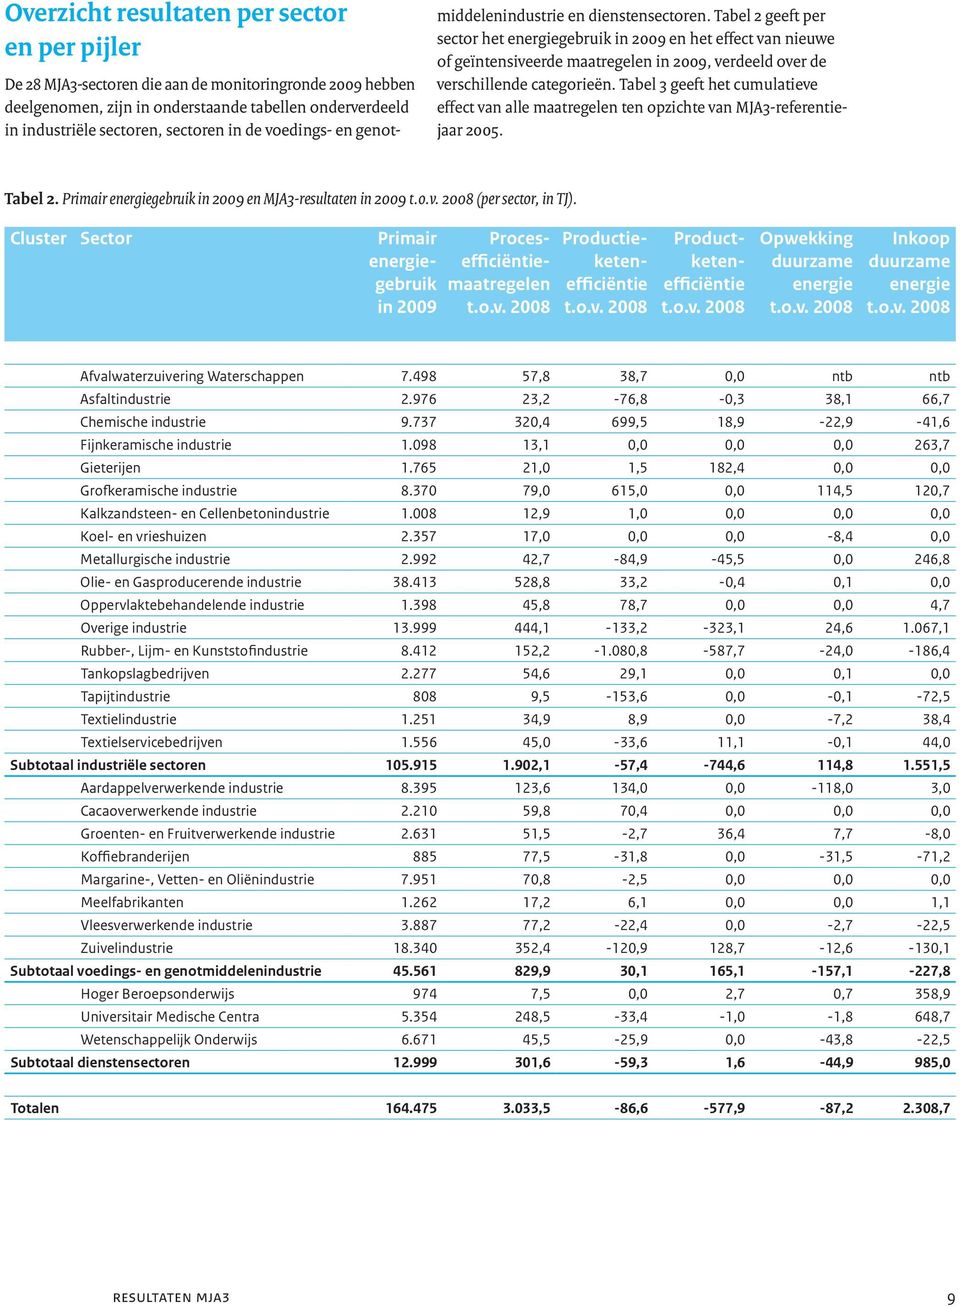 Tabel 2 geeft per sector het energiegebruik in 2009 en het effect van nieuwe of geïntensiveerde maatregelen in 2009, verdeeld over de verschillende categorieën.